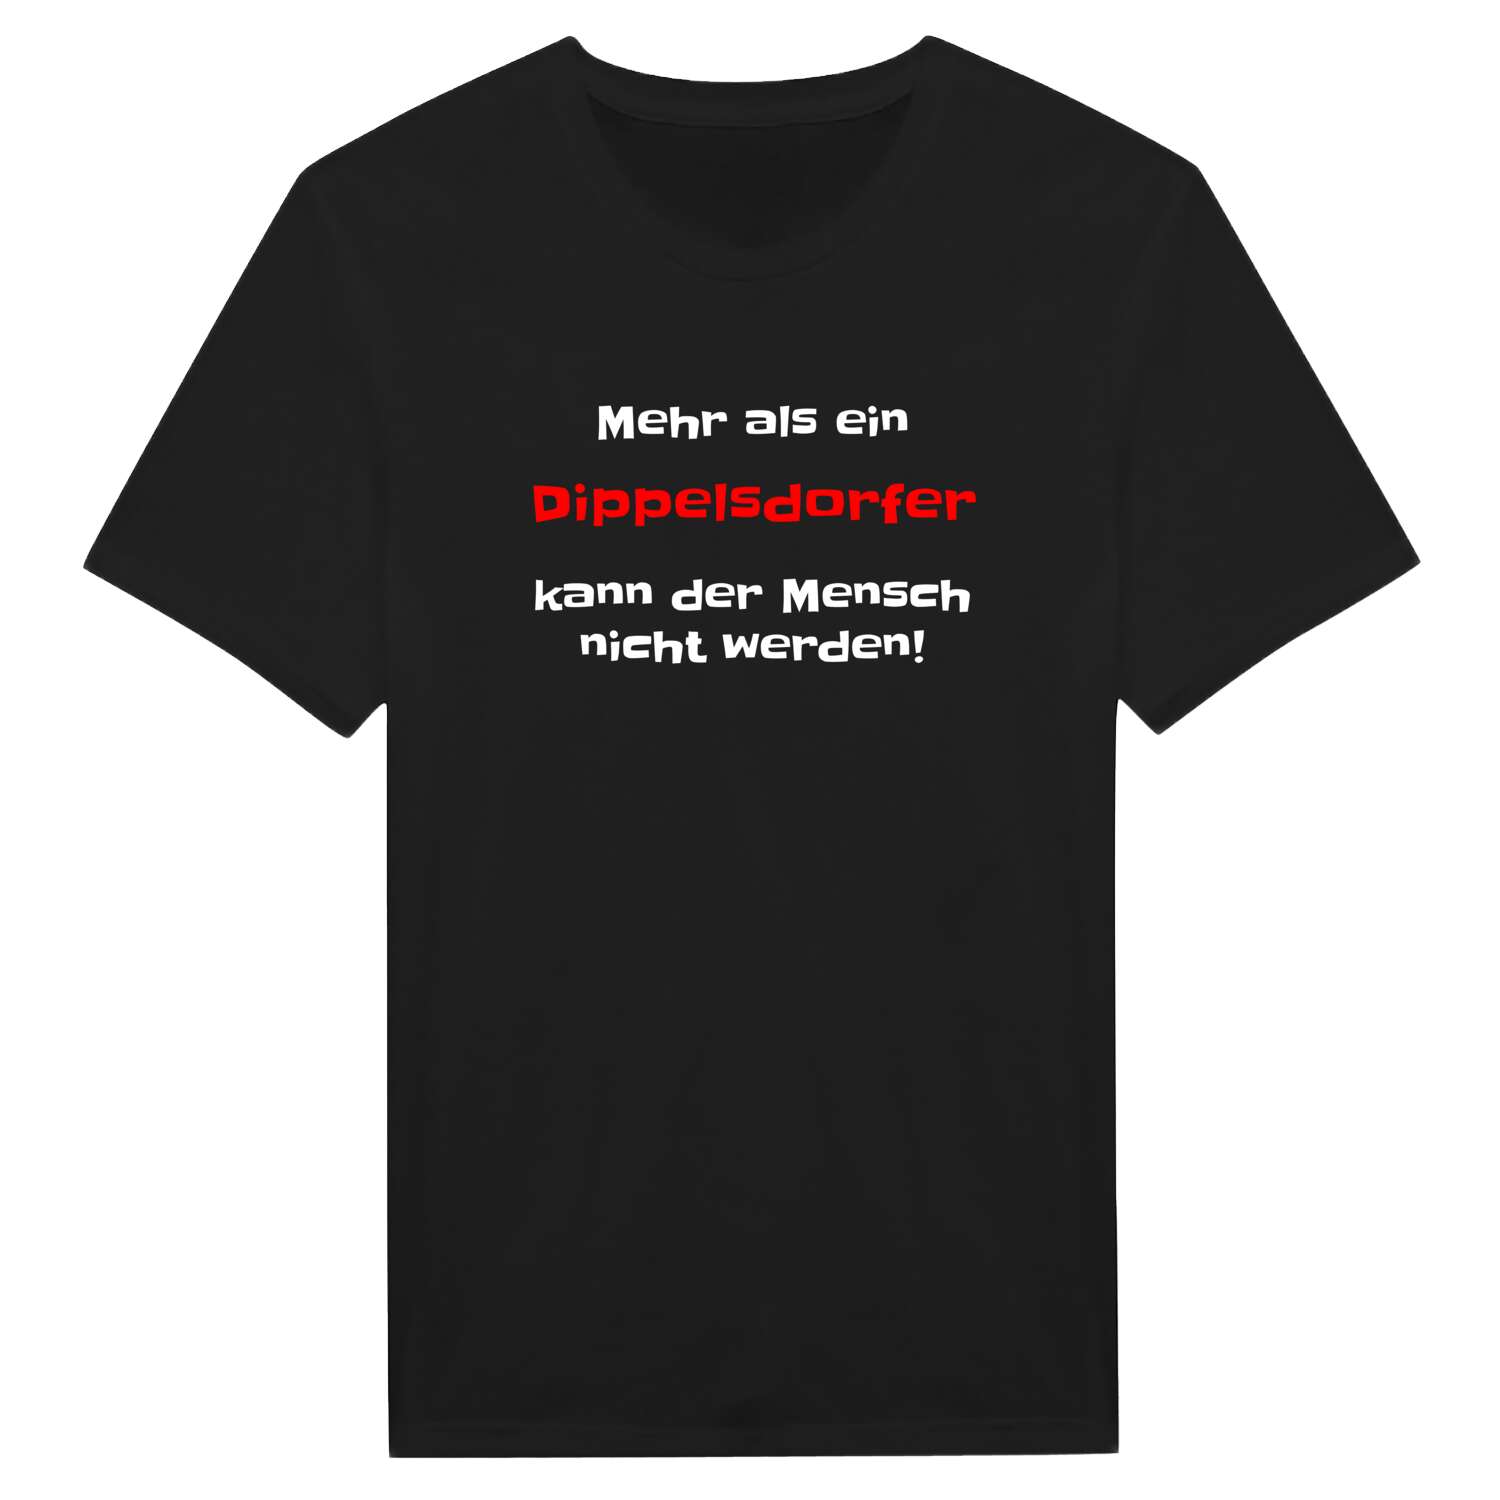 Dippelsdorf T-Shirt »Mehr als ein«